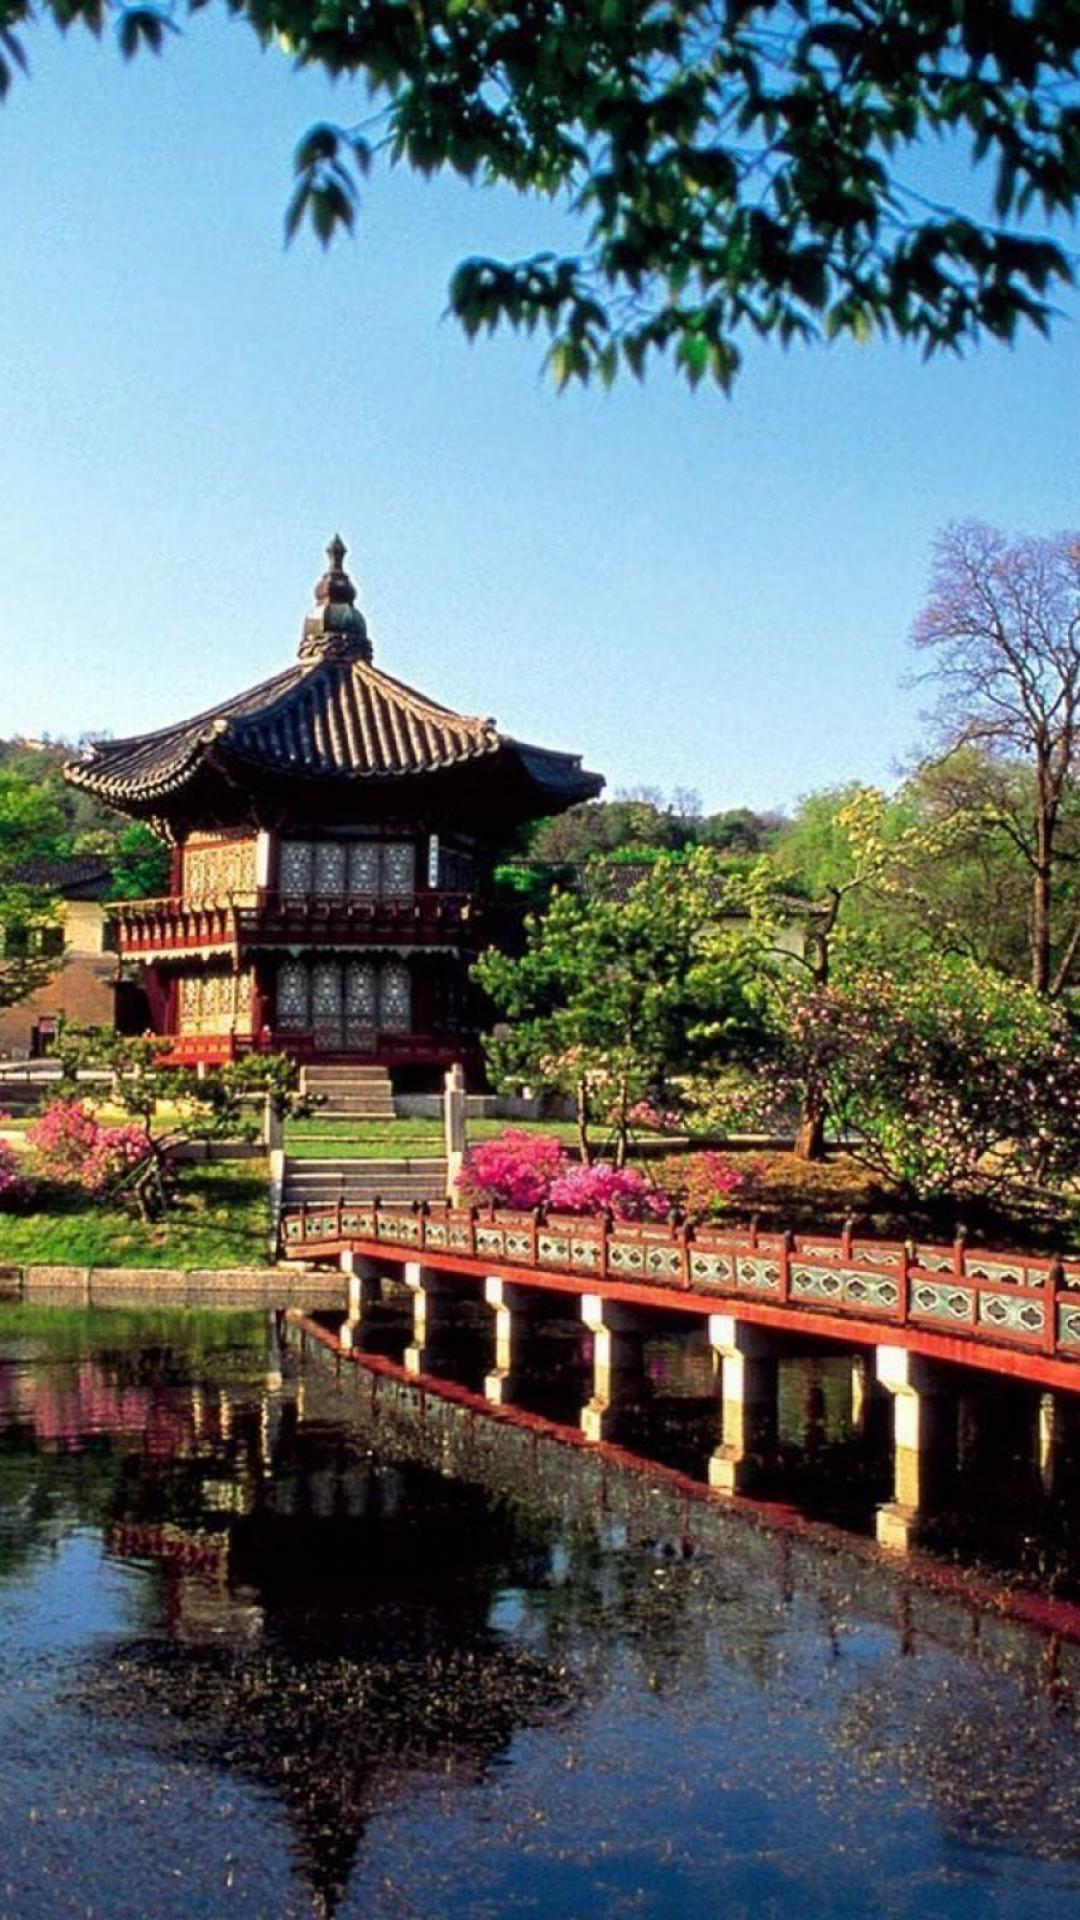 ソウル壁紙iphone,中国の建築,自然の風景,建築,日本の建築,水